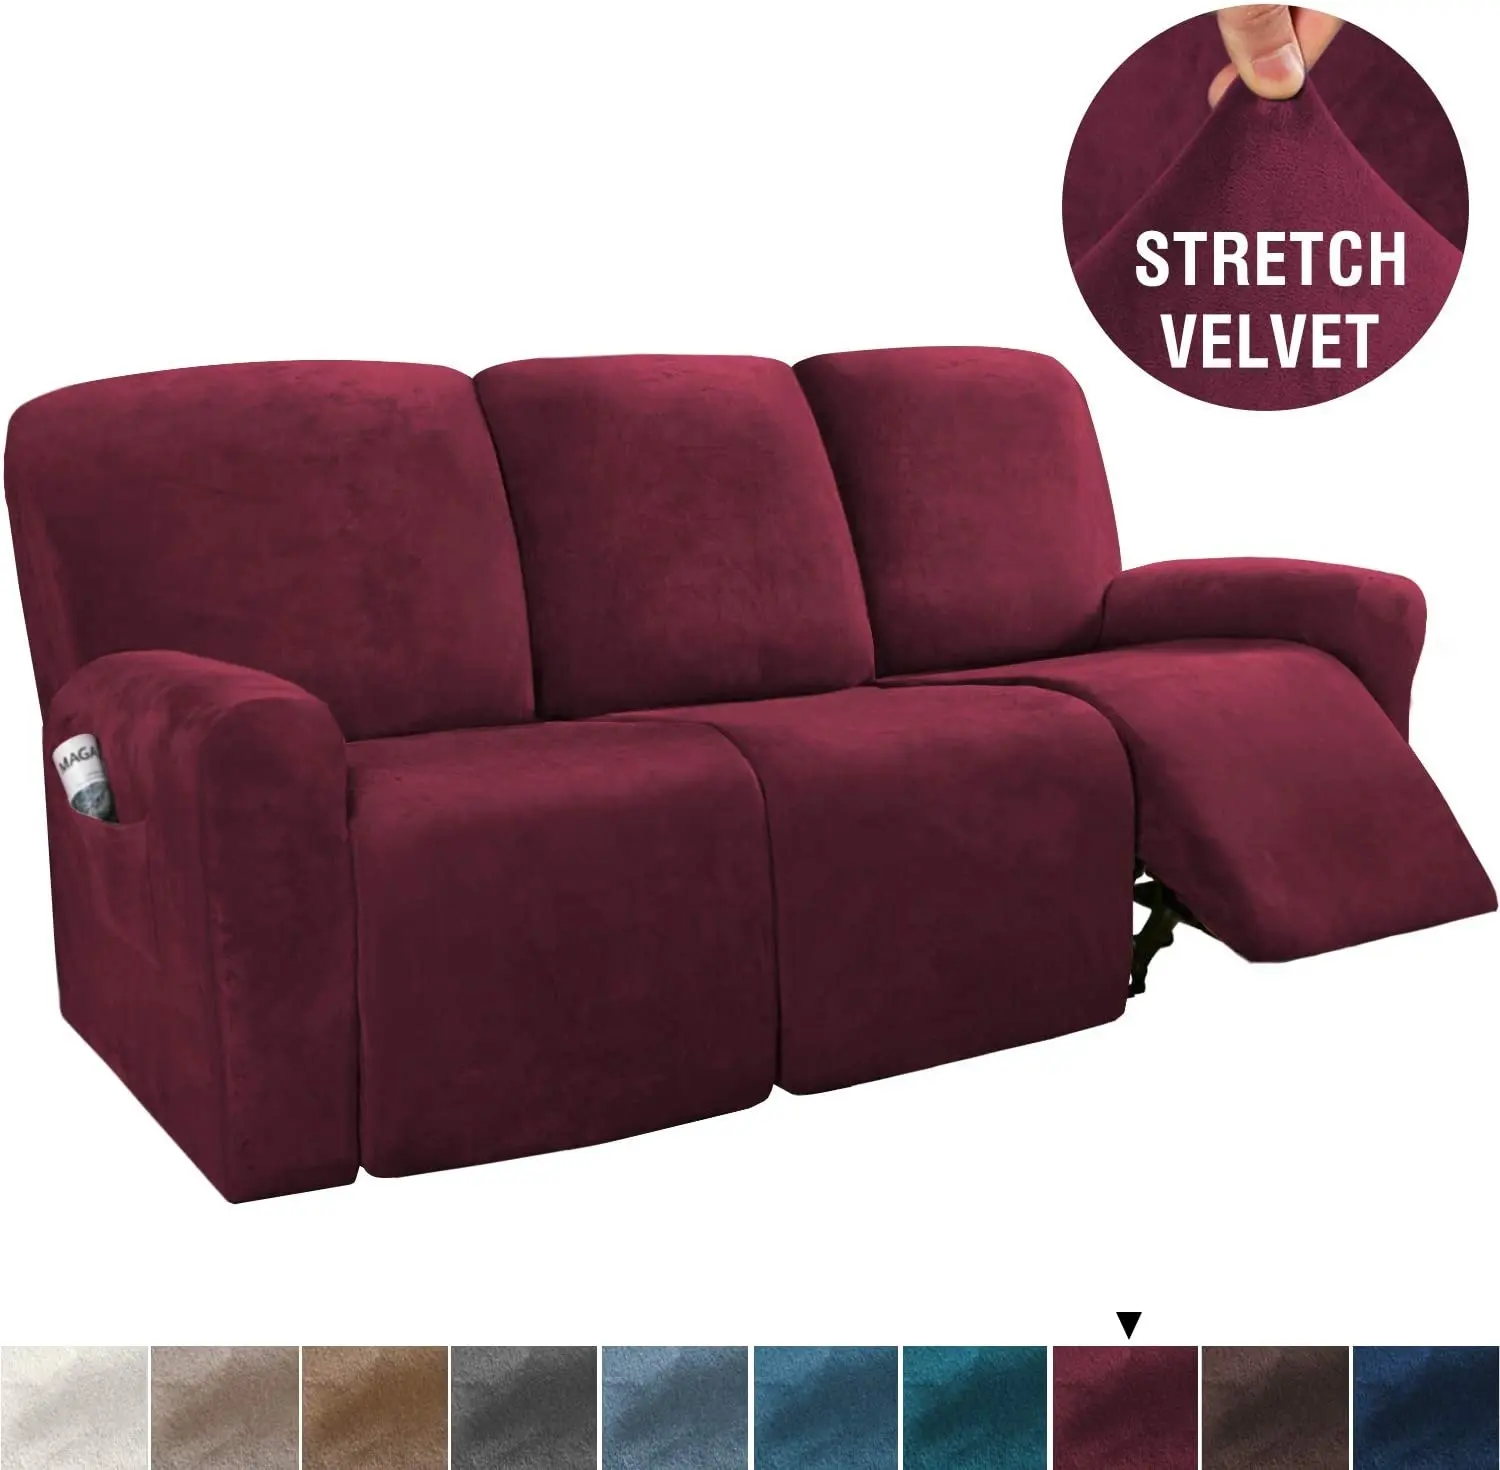 Luxury Velvet 3 Seater Recliner Cover Furniture Covers recliner sofa cover set for recliner seat